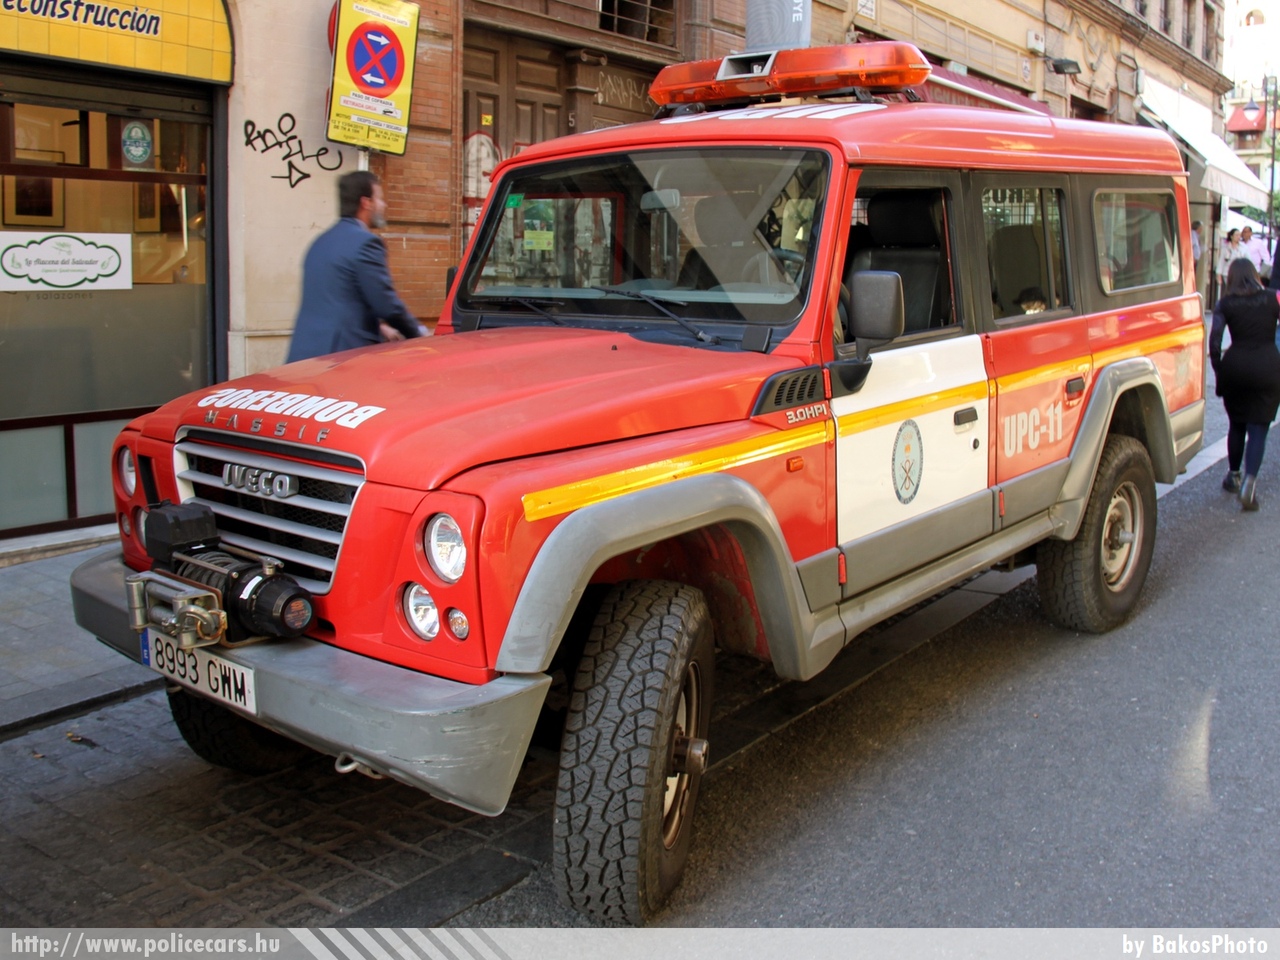 Iveco Massif, fotó: BakosPhoto
Keywords: spanyol Spanyolország spain tûzoltó tûzoltóautó fire firetruck